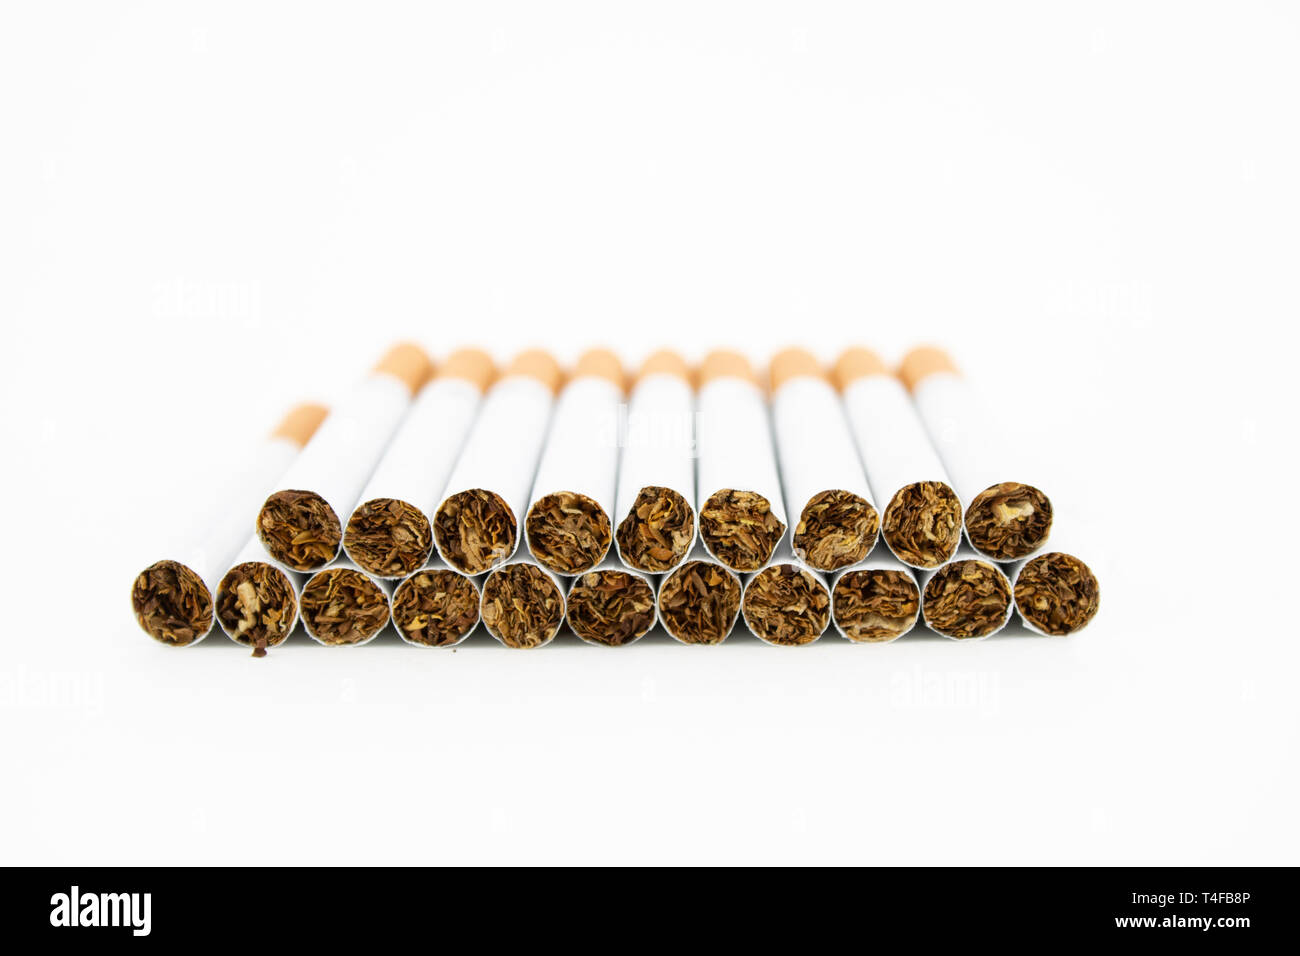 Pacchetto di sigarette su sfondo bianco. Sigarette con filtro. Il tabacco può causare numerosi danni per l'organismo. Foto Stock